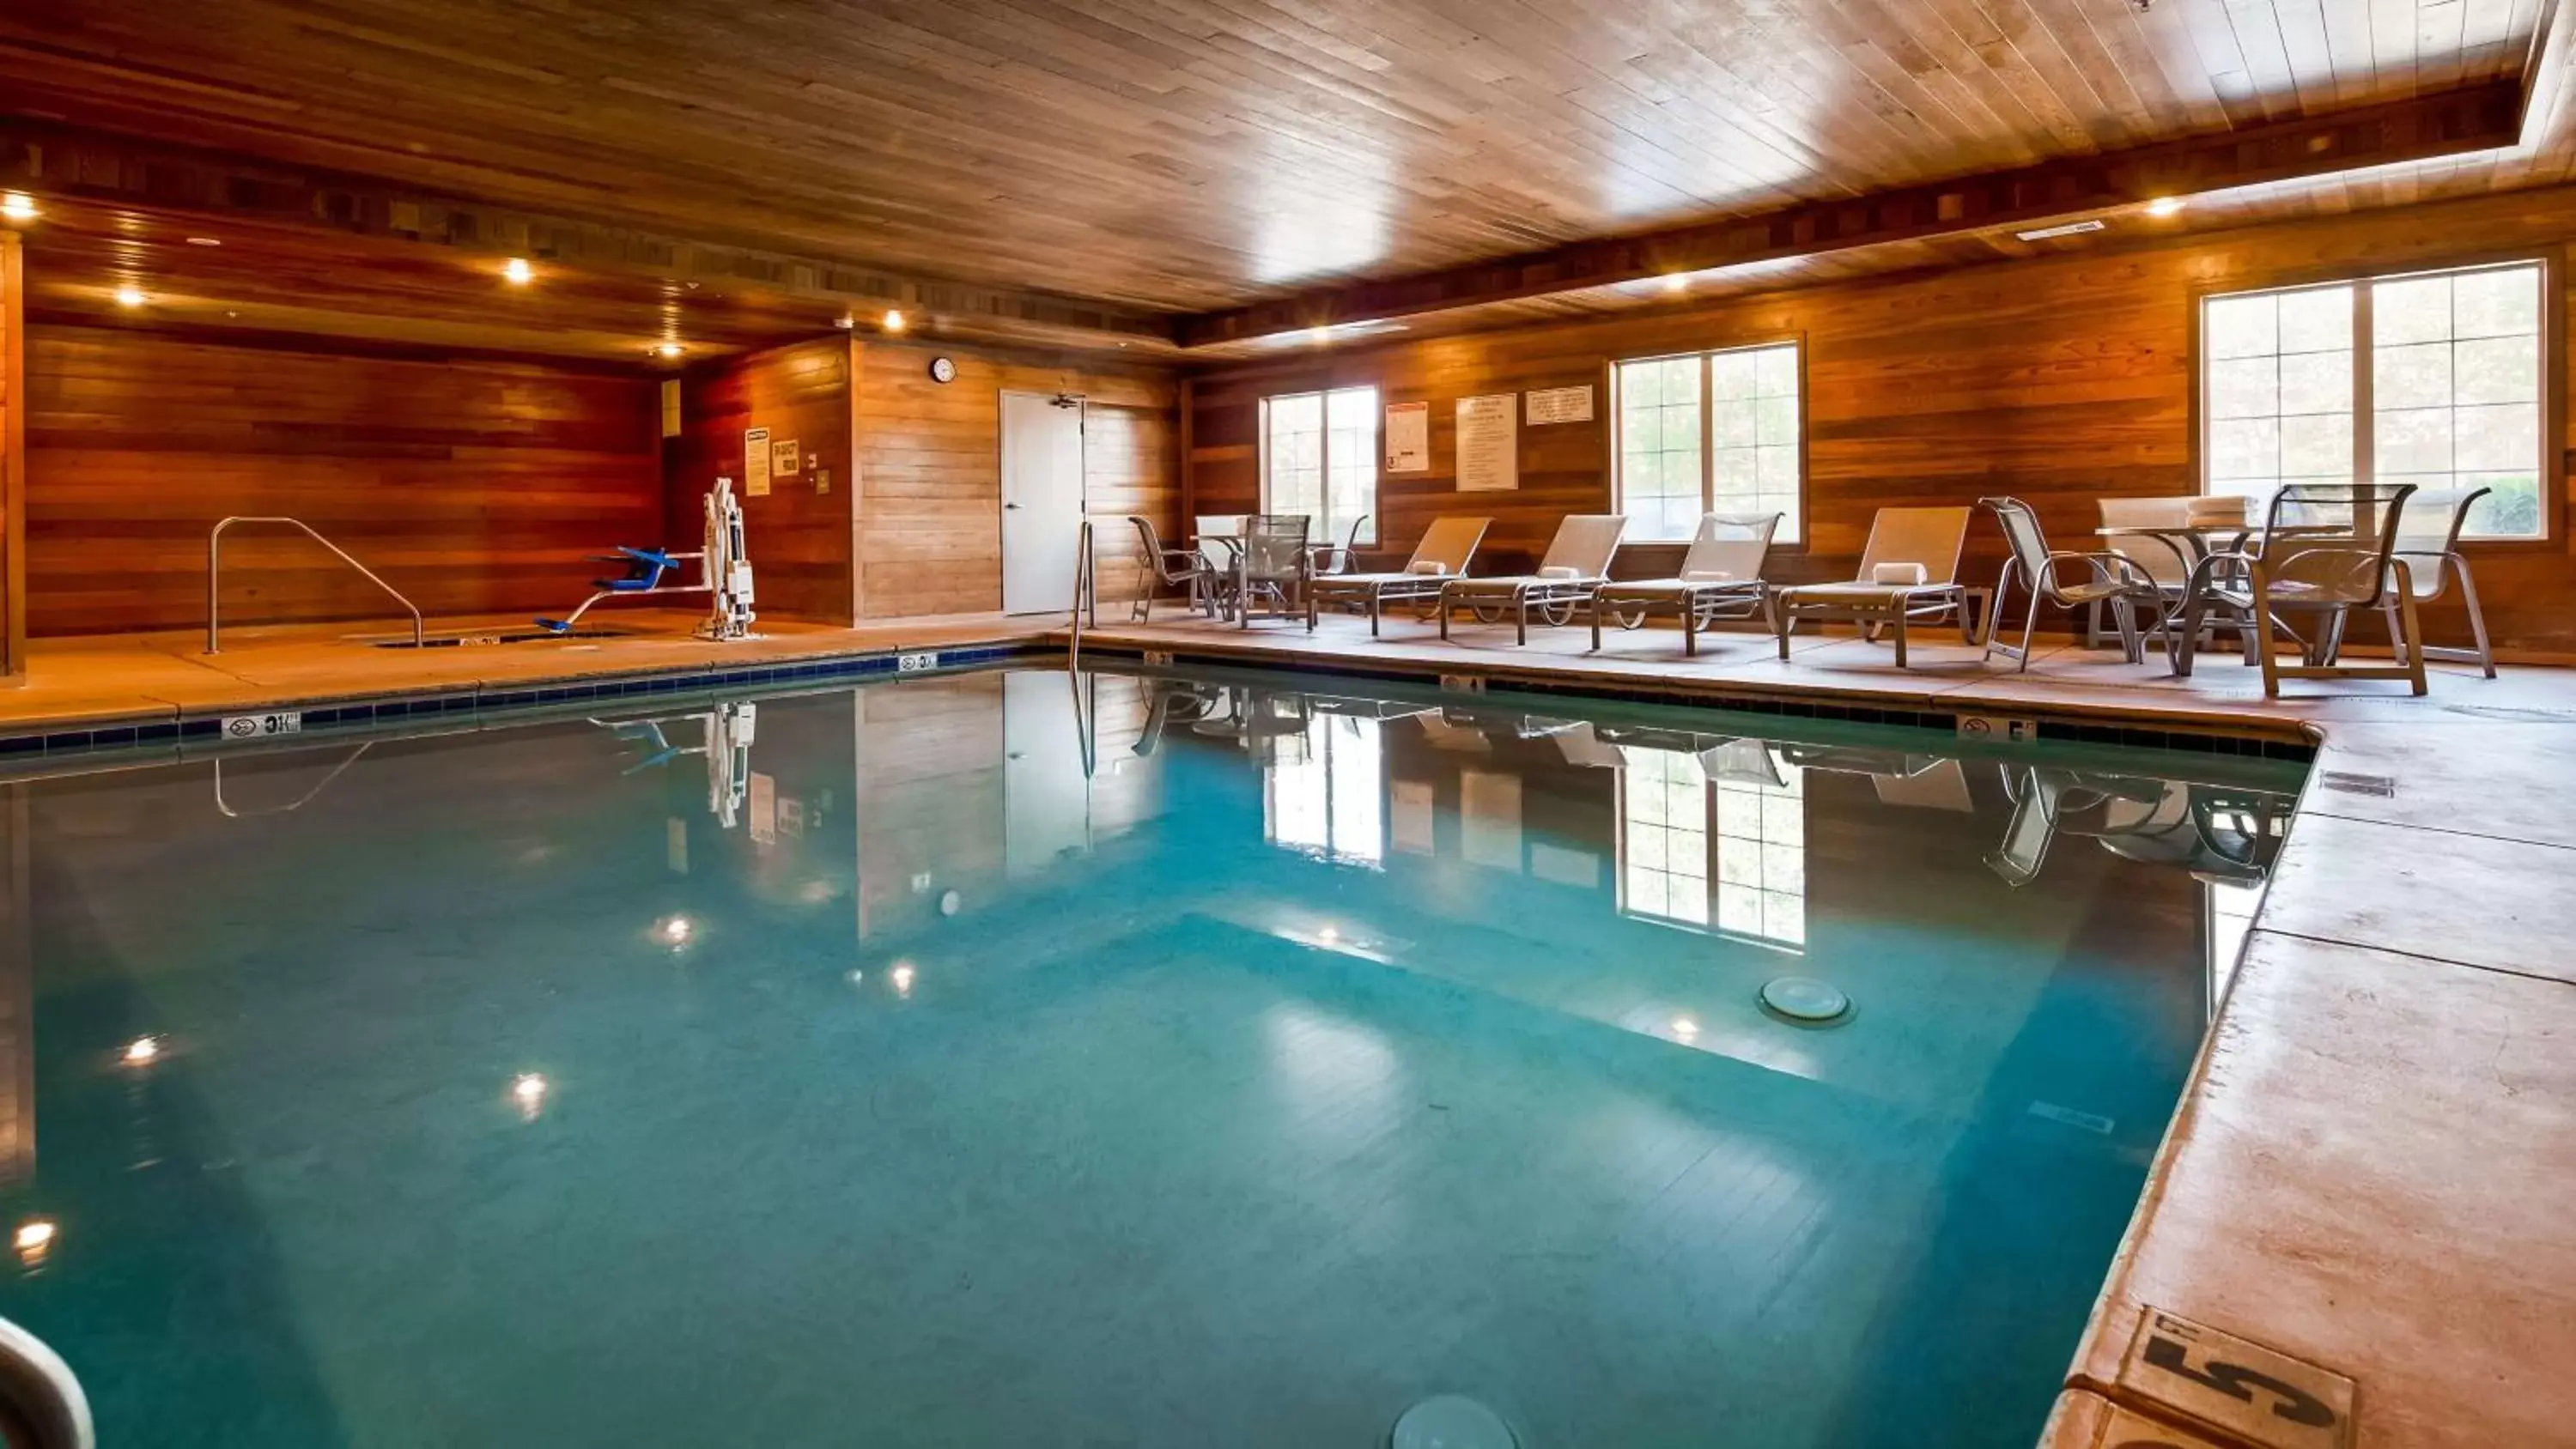 On site, Swimming Pool in Best Western Plus Rama Inn & Suites